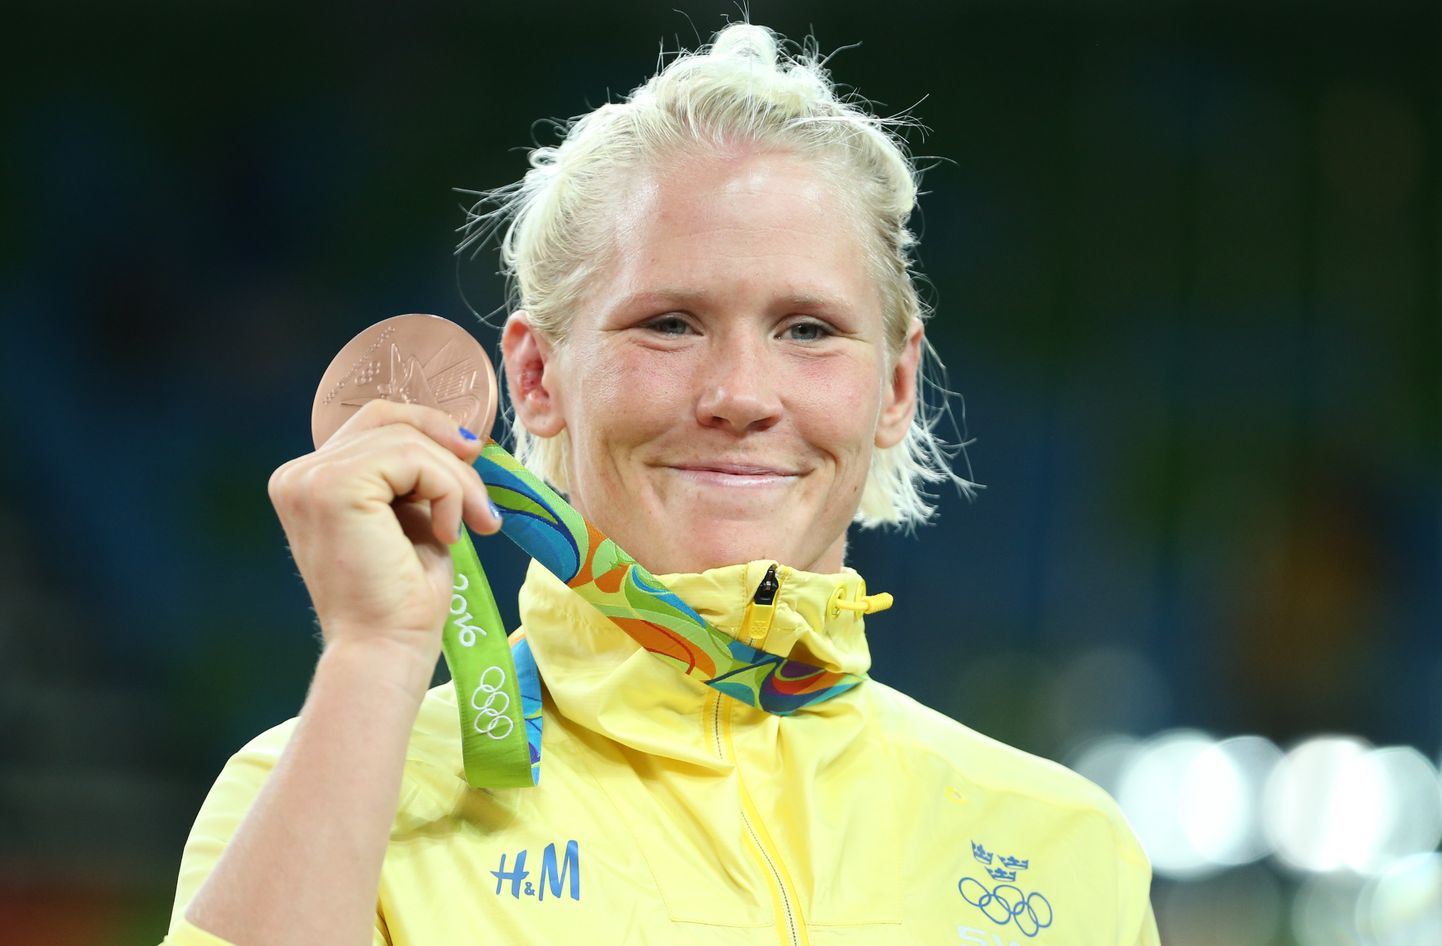 Jenny Fransson võitis Rio olümpiamängudel pronksmedali.